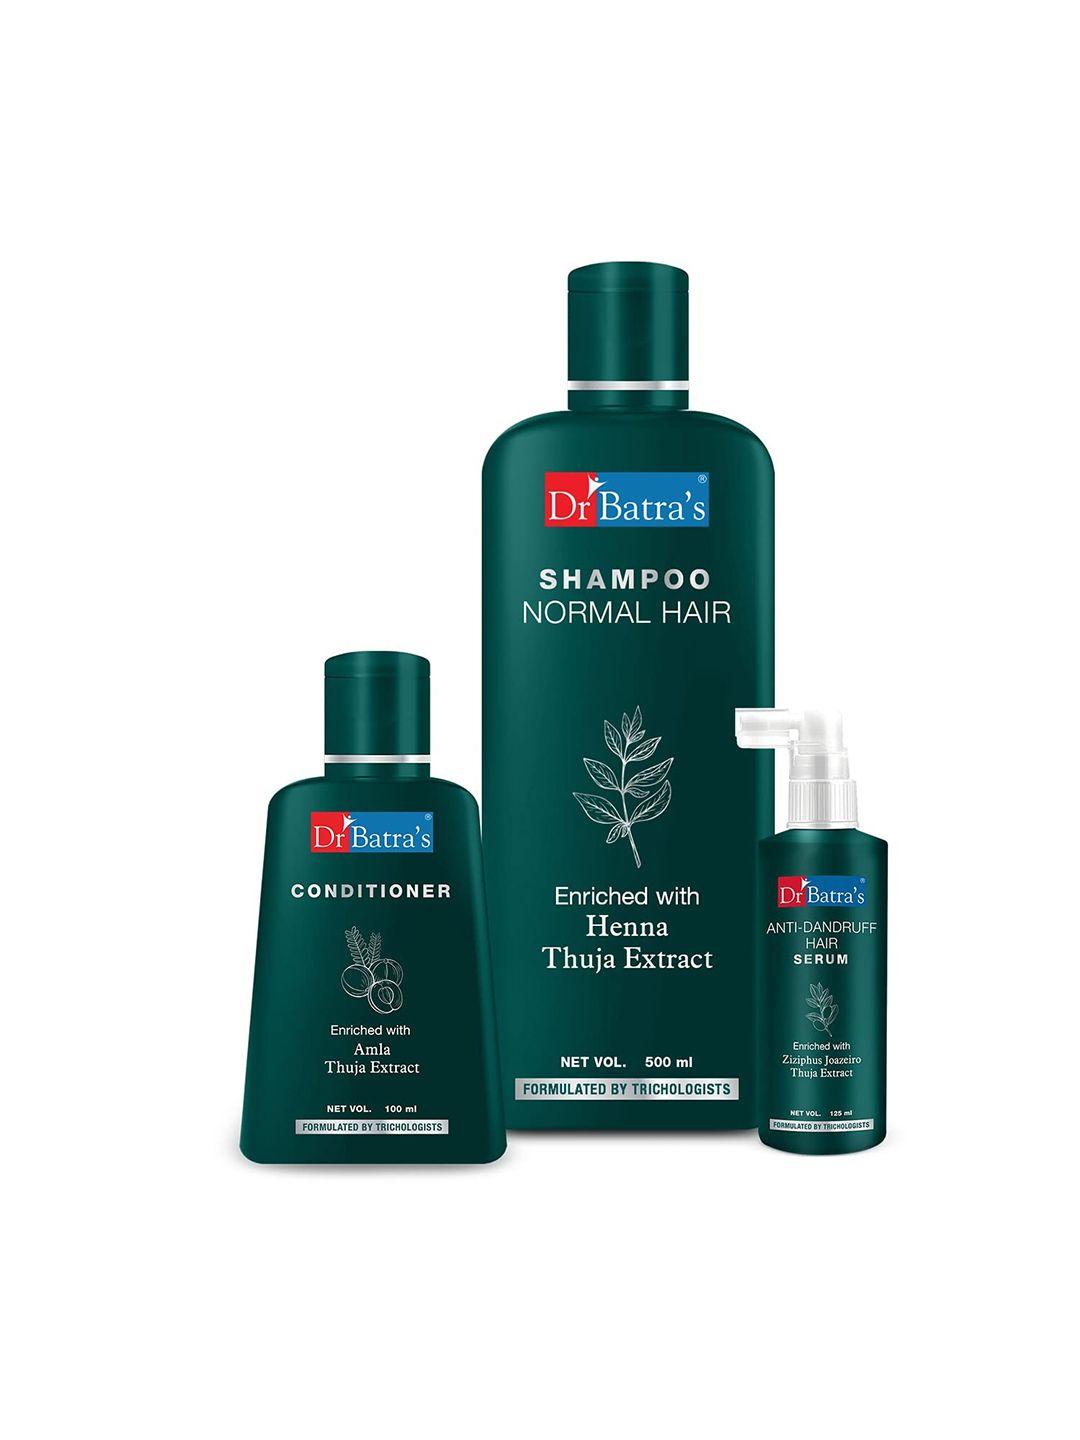 dr. batras anti dandruff hair serum 125ml + conditioner 100ml + normal hair shampoo 500ml